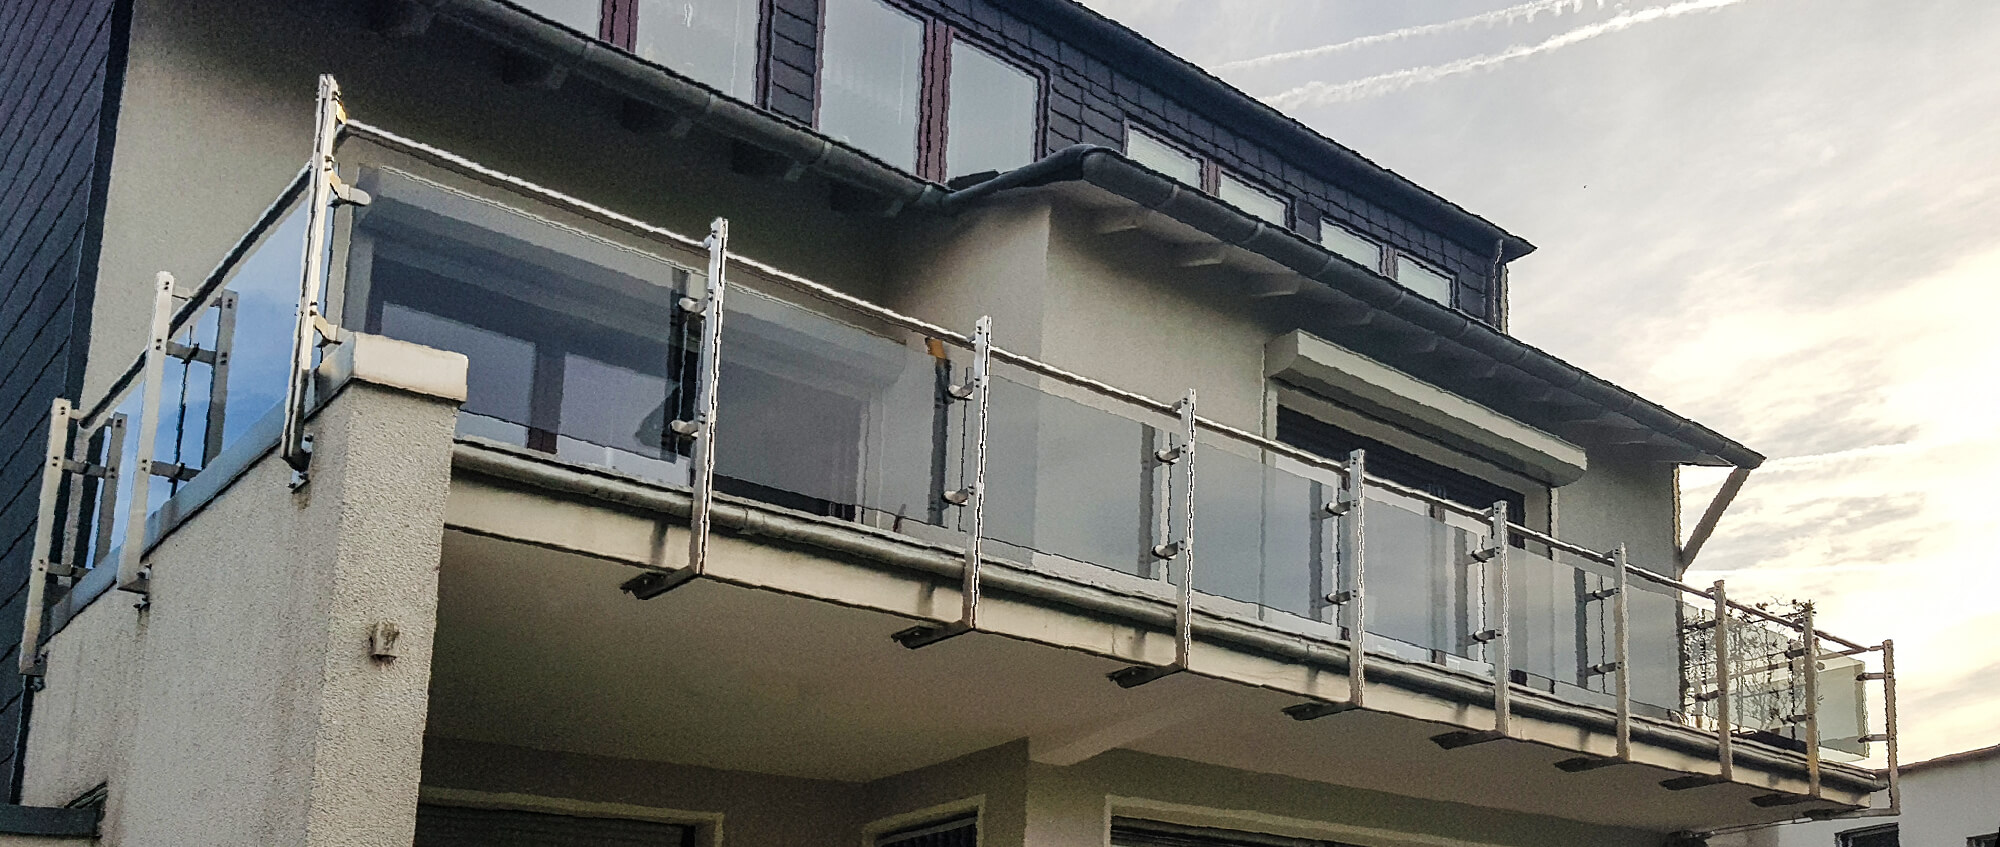 Acht Meter Balkongeländer aus Edelstahl verbaute die Edelstahlschlosserei Nappenfeld für ein 3-Familienhaus in Mülheim